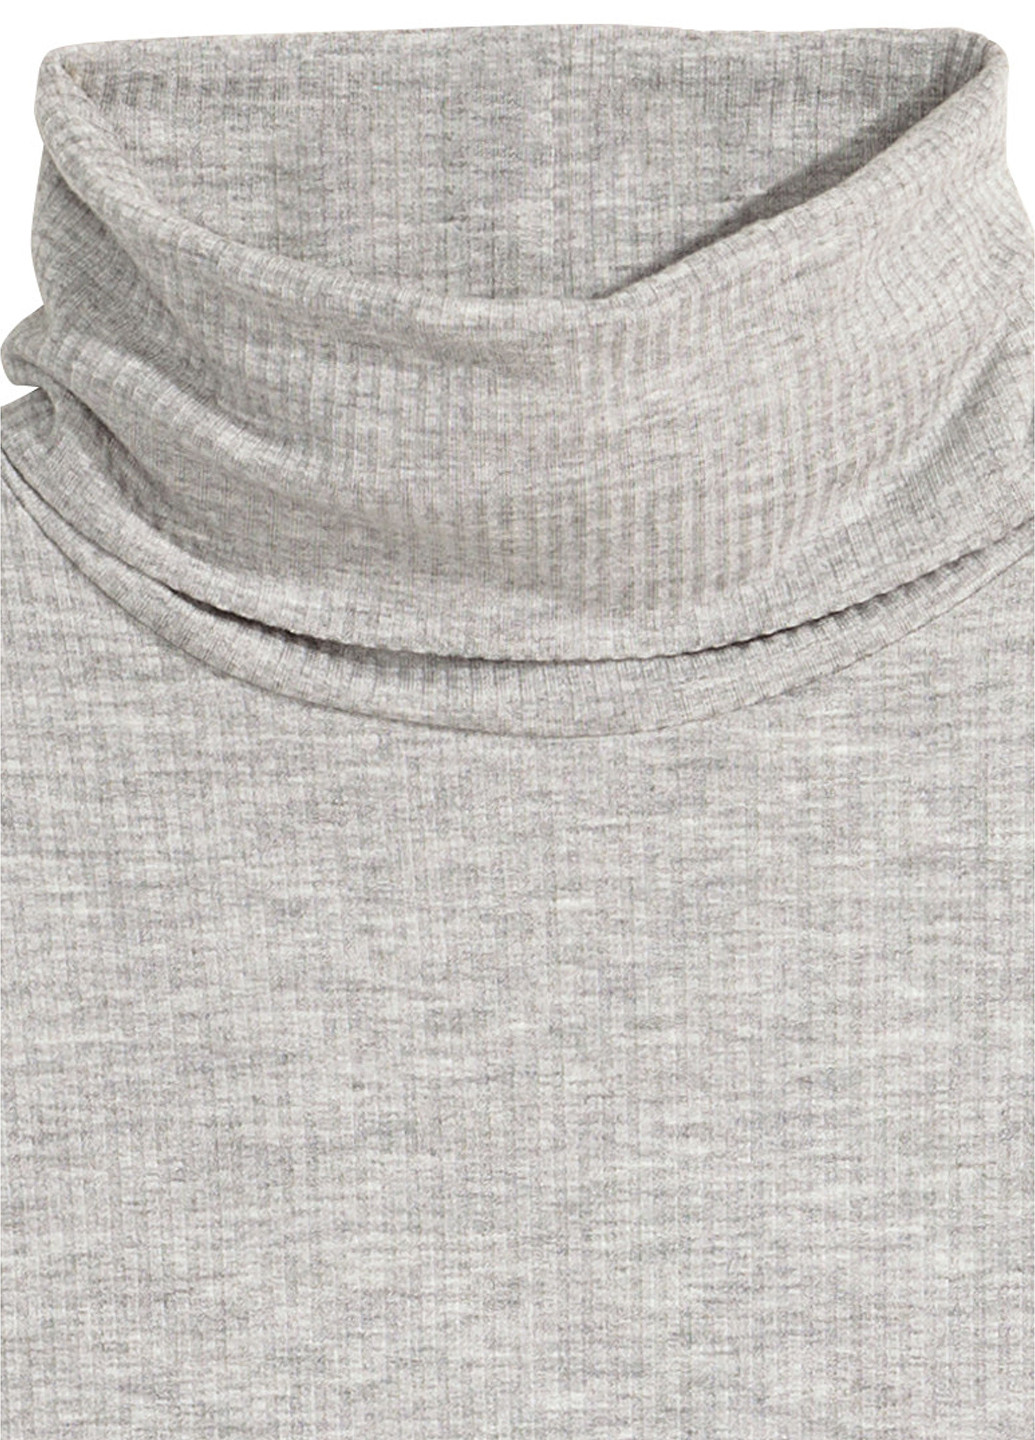 Гольф H&M меланж серый кэжуал вискоза